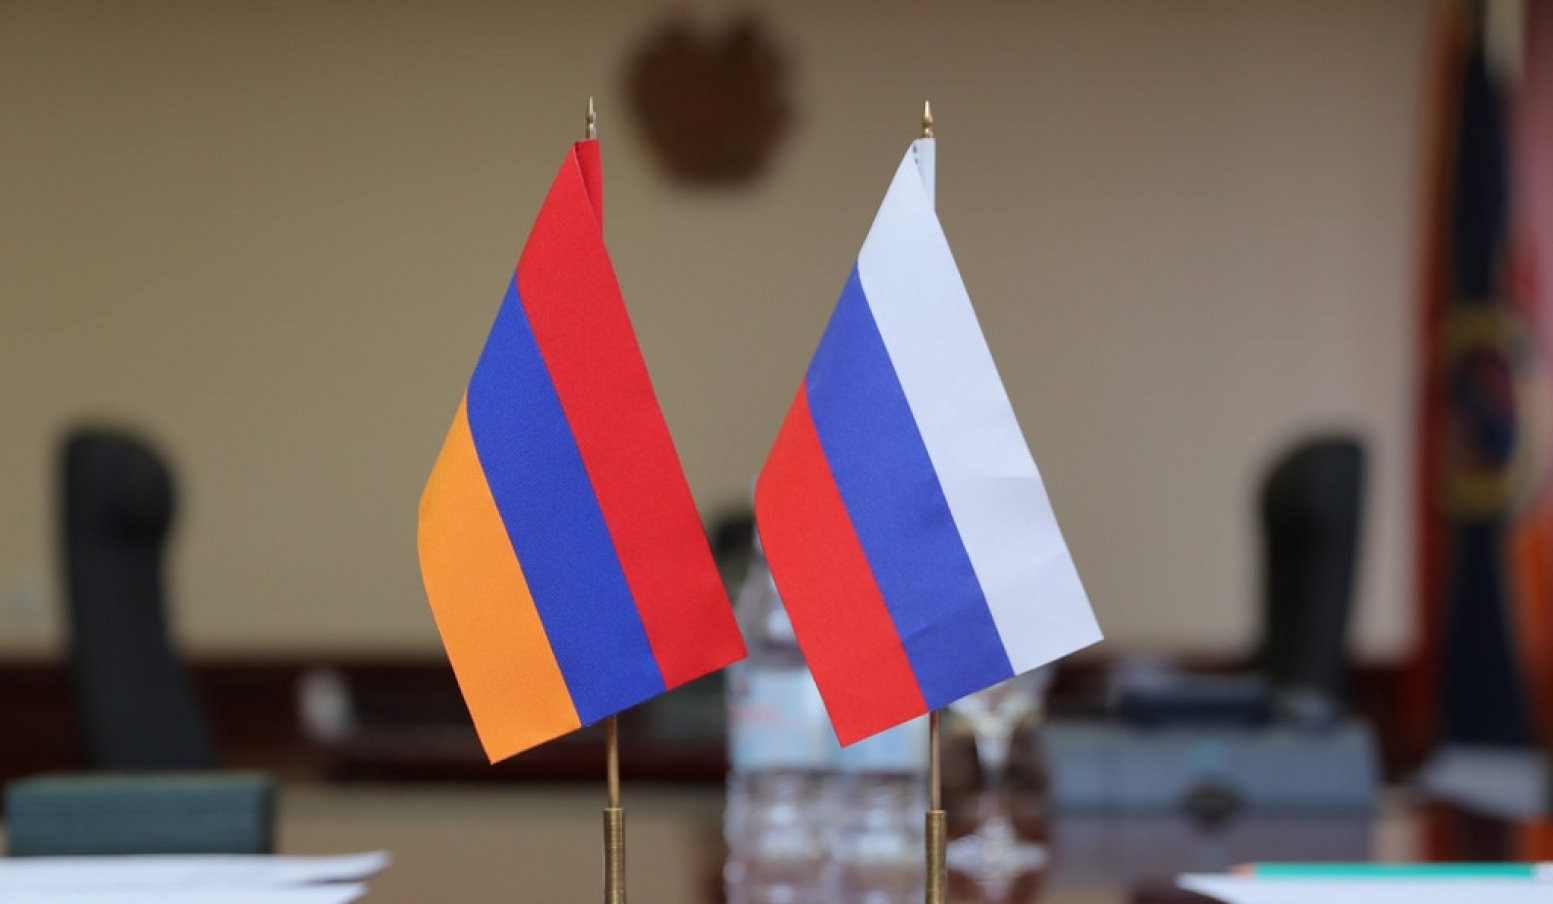 Հայաստանն ու Ռուսաստանը խորհրդակցություններ են անցկացնում հայ-ադրբեջանական սահմանին տիրող իրավիճակի վերաբերյալ